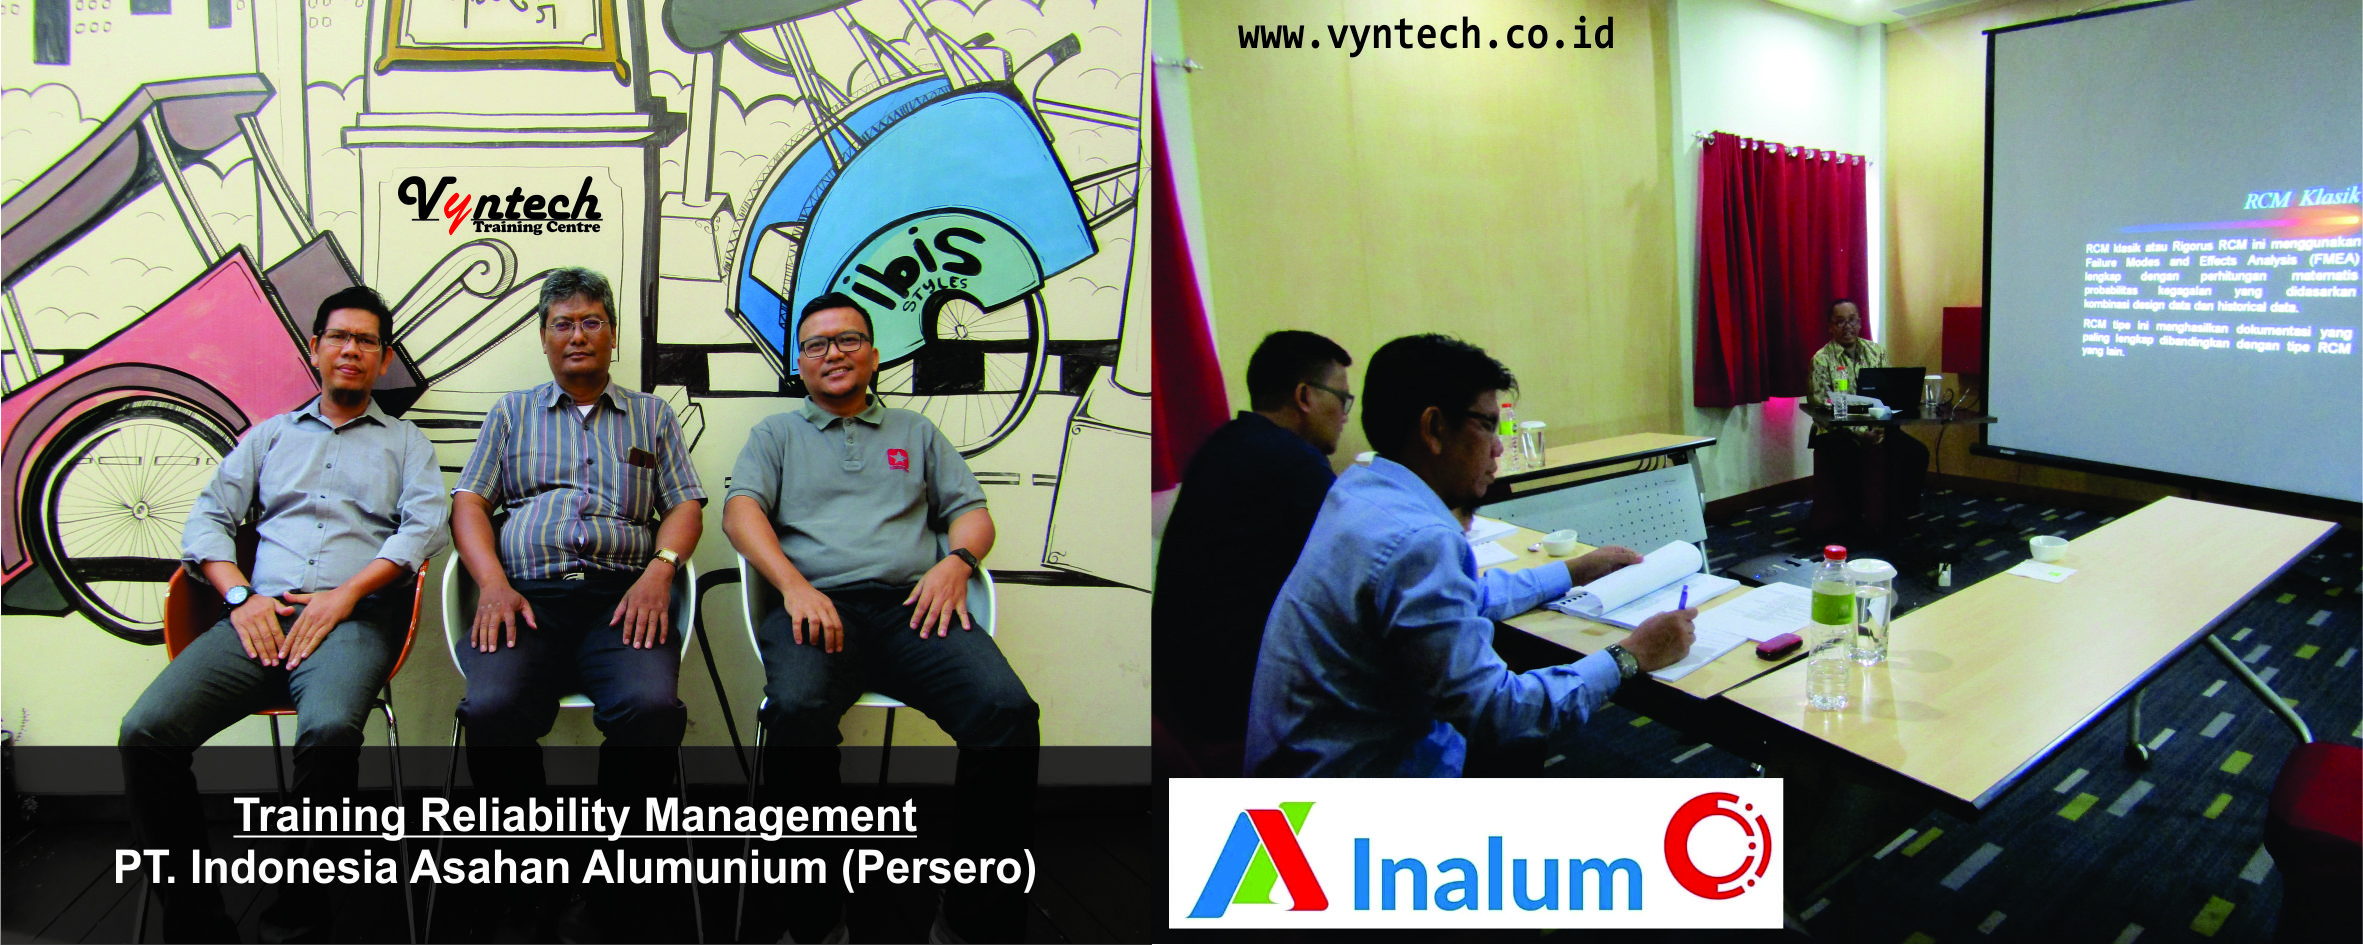 20170207 Training Reliability Management - PT. Indonesia Asahan Alumunium Inalum (Persero)